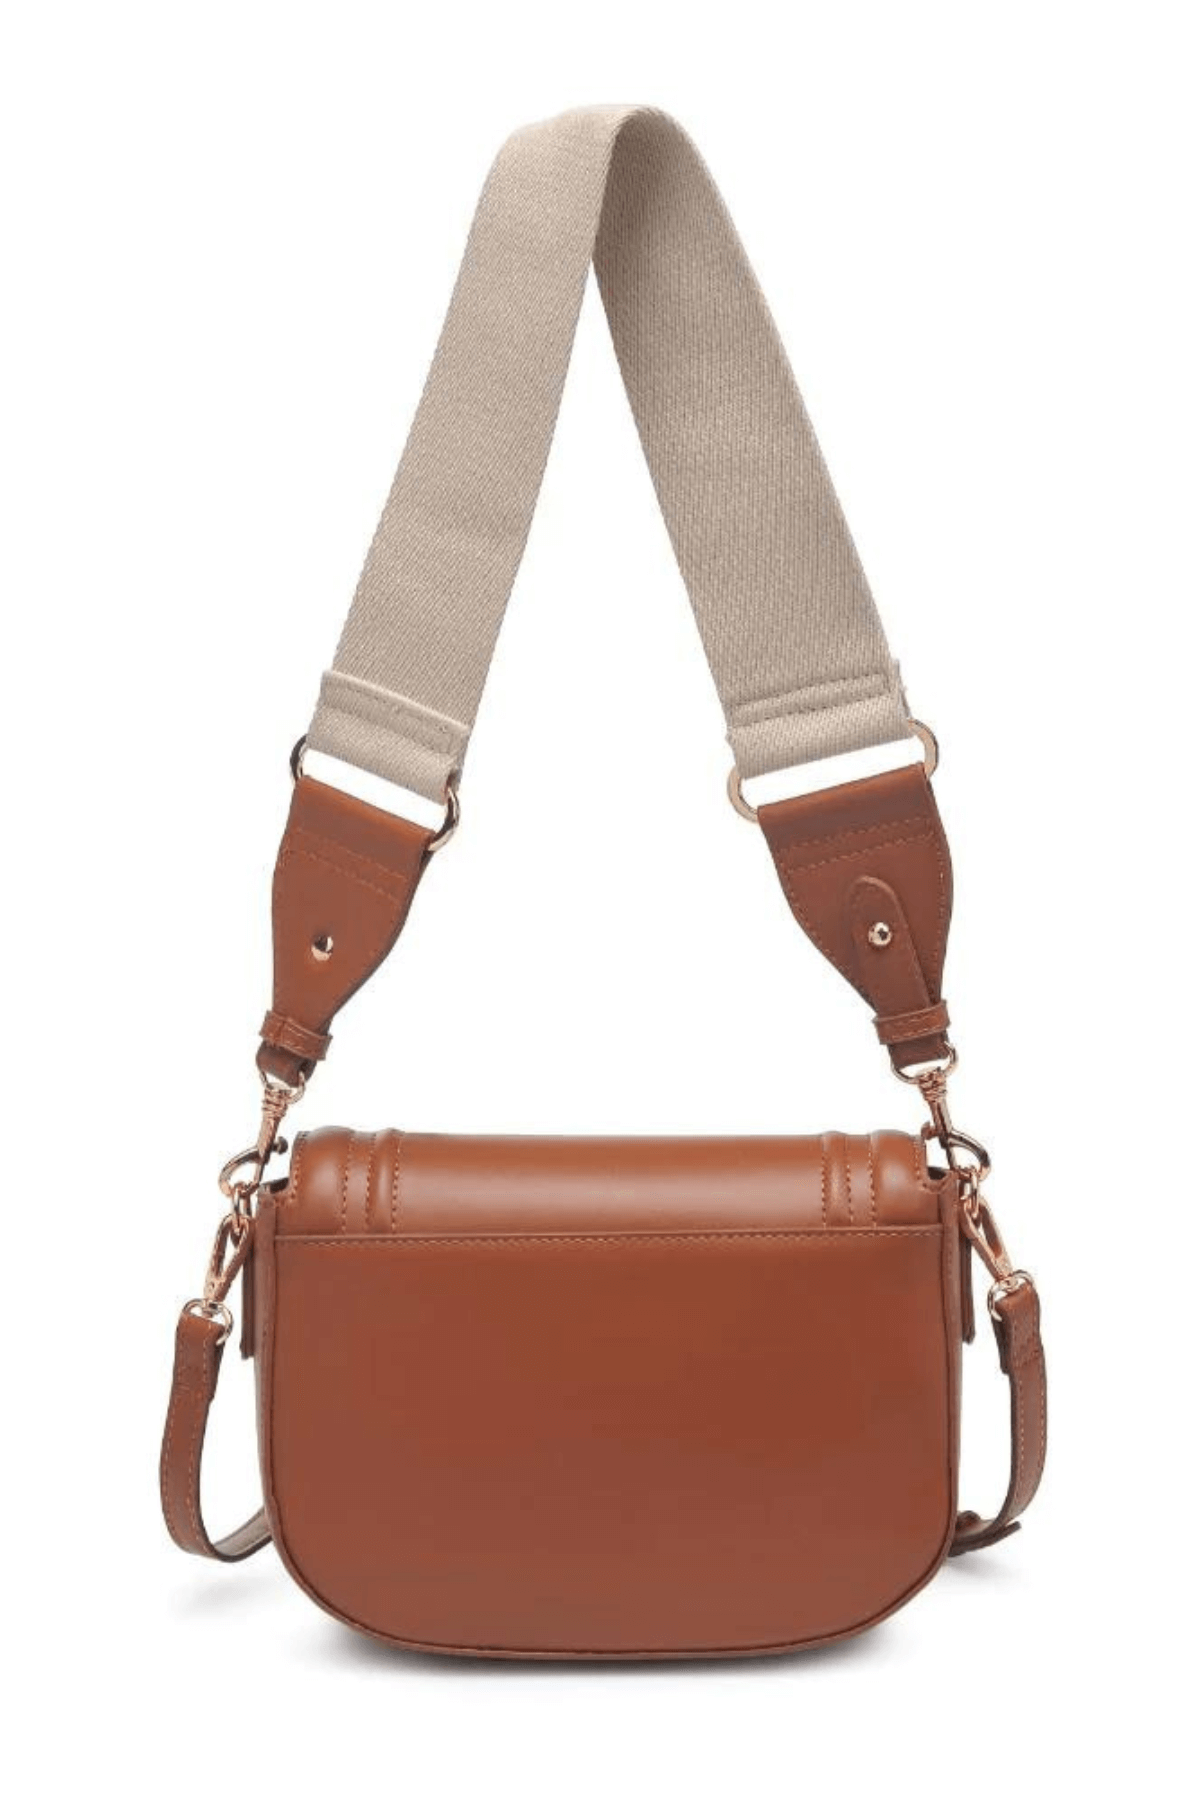 Moda Luxe Poshette Bag